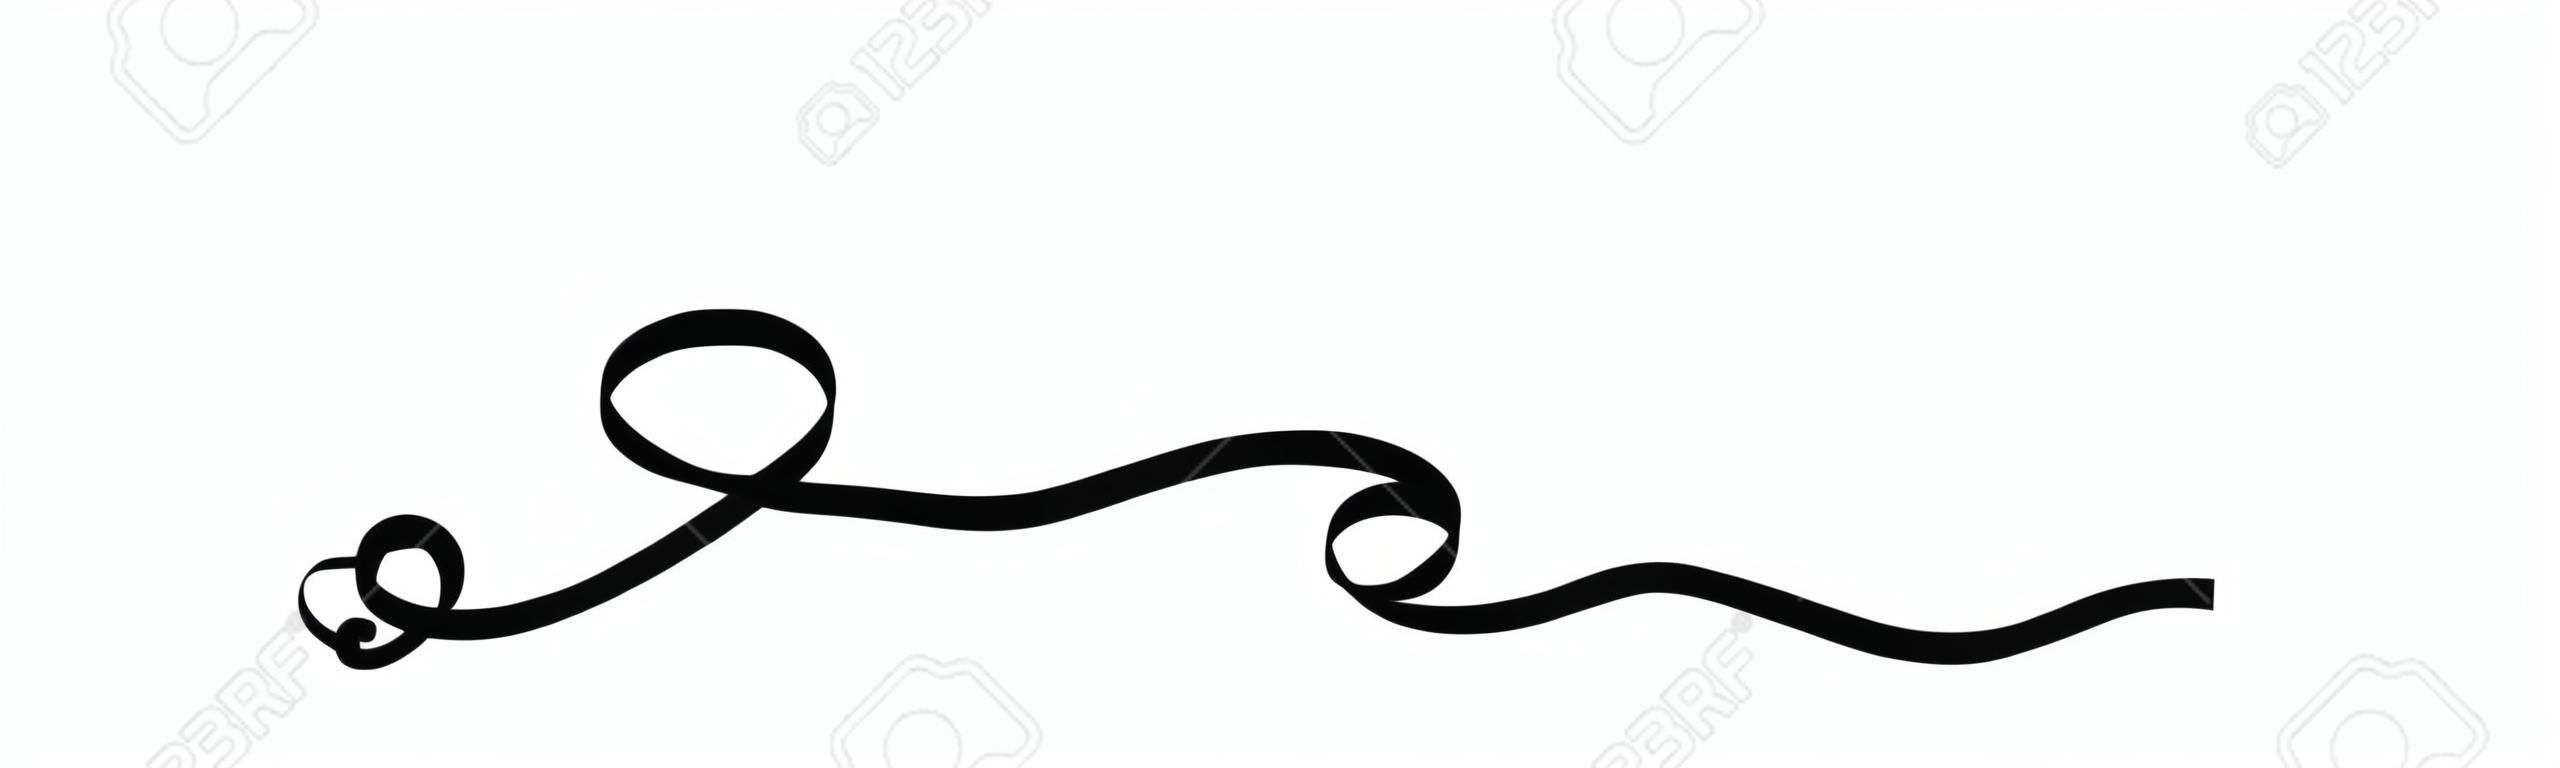 Coeur noir de calligraphie unique avec deux rubans de gribouillis